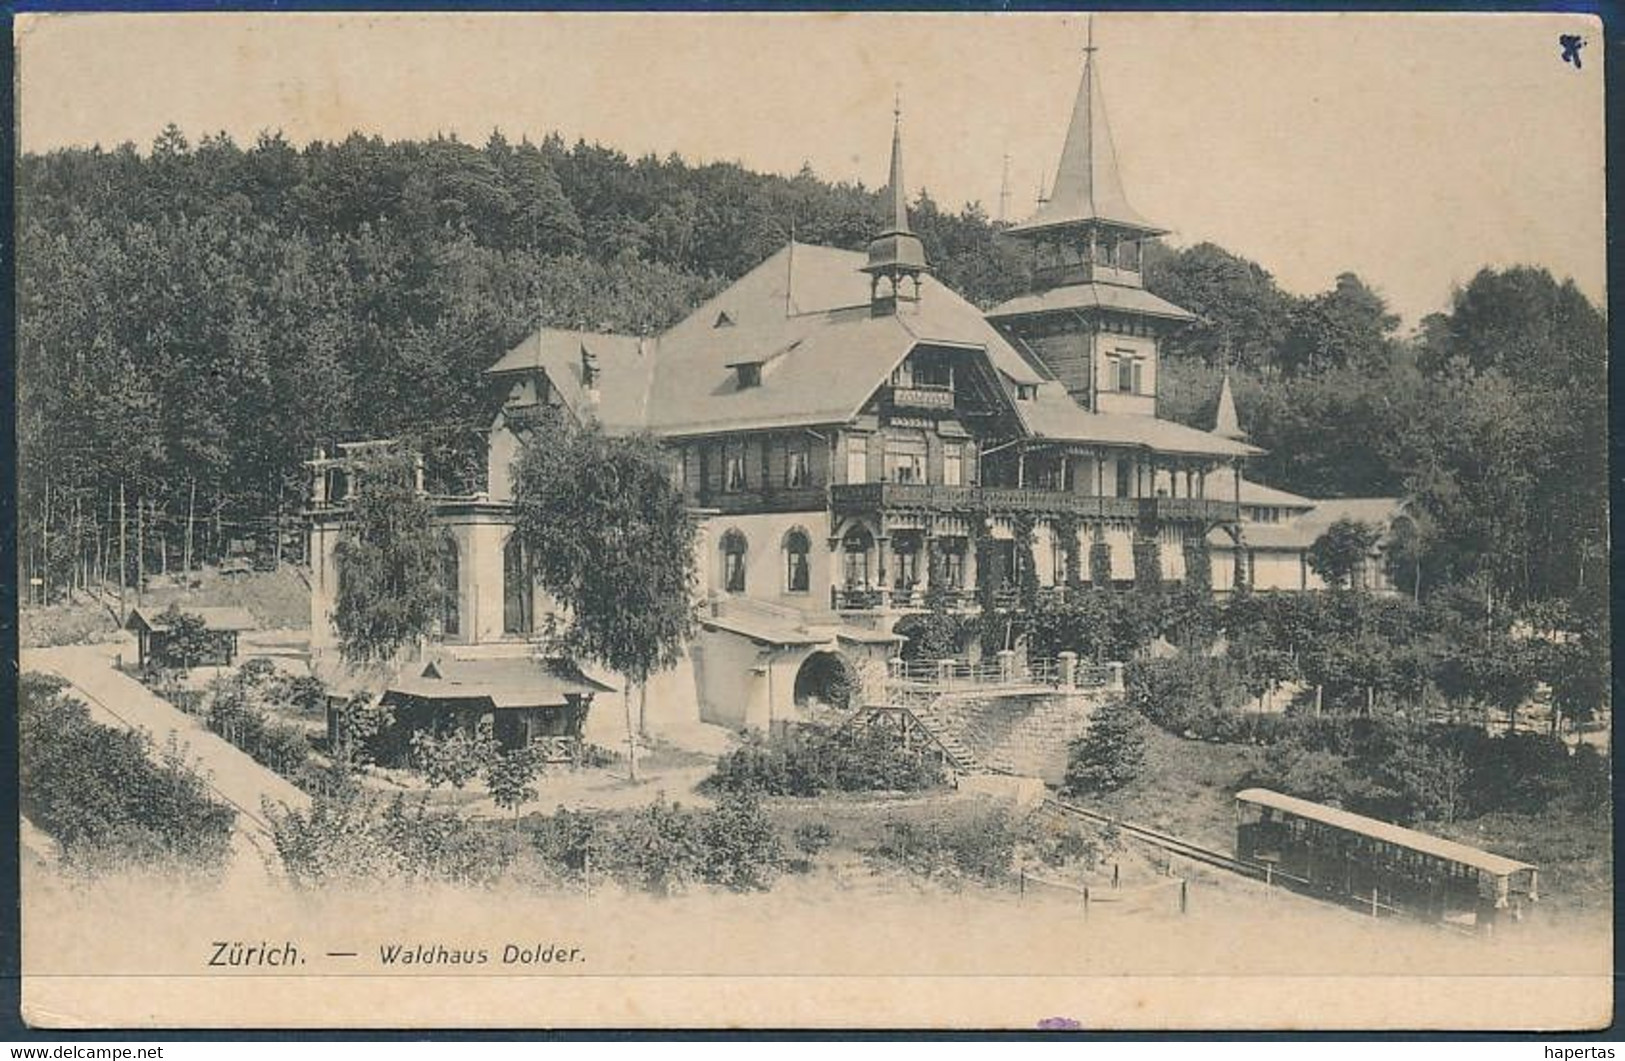 Zürich, Waldhaus Dolder - Posted 1911 - Wald